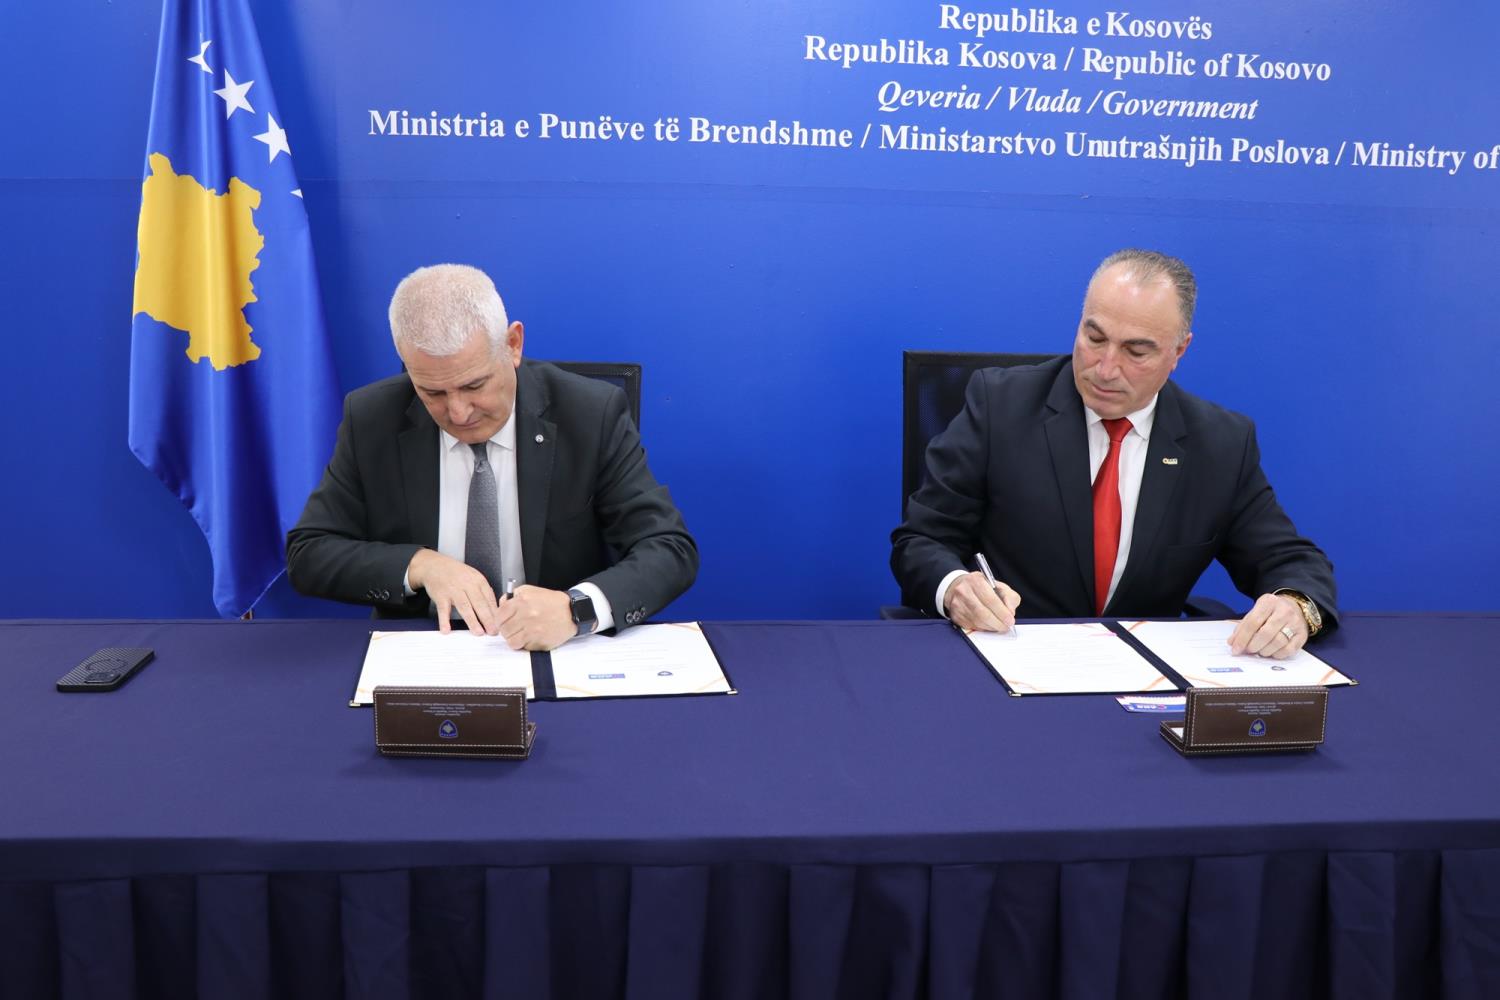 Potpisan je memorandum o saradnji između Ministarstva unutrašnjih poslova i Poslovne alijanse Kosova  za nuđenje popusta na proizvode za vatrogasce i policijske službenike